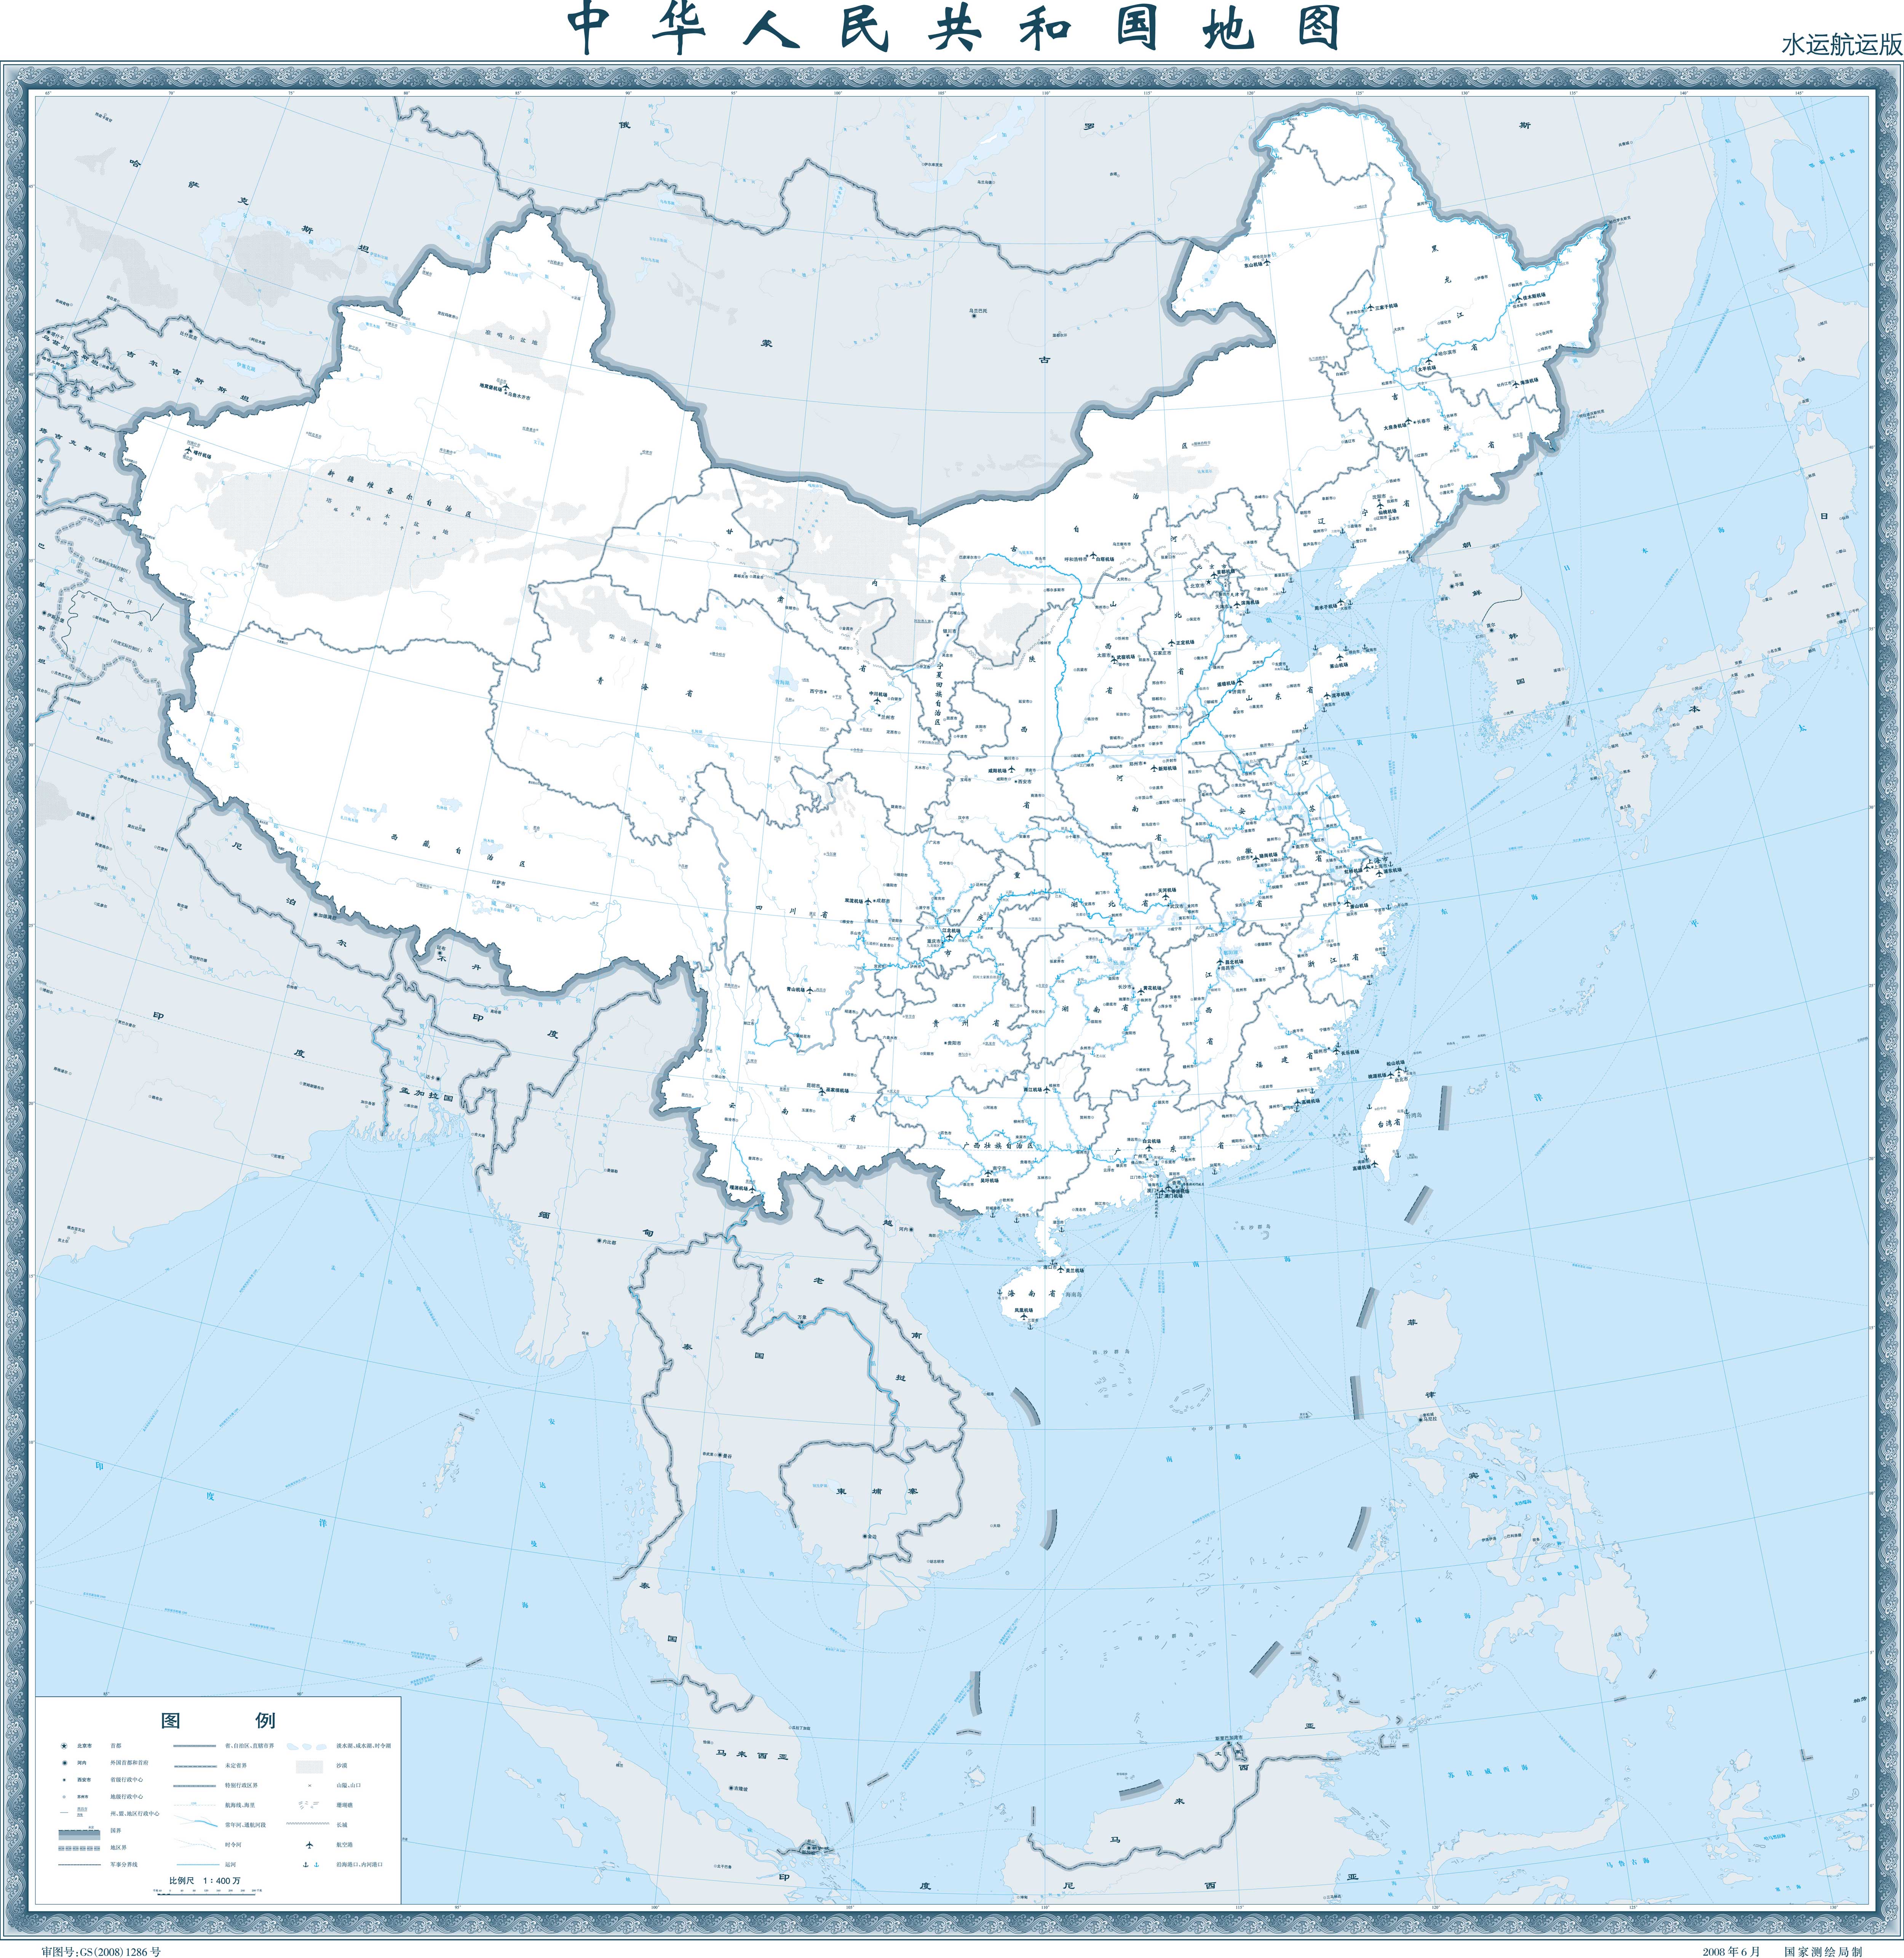 中国地图高清版大图(2500万像素)_中国地图库